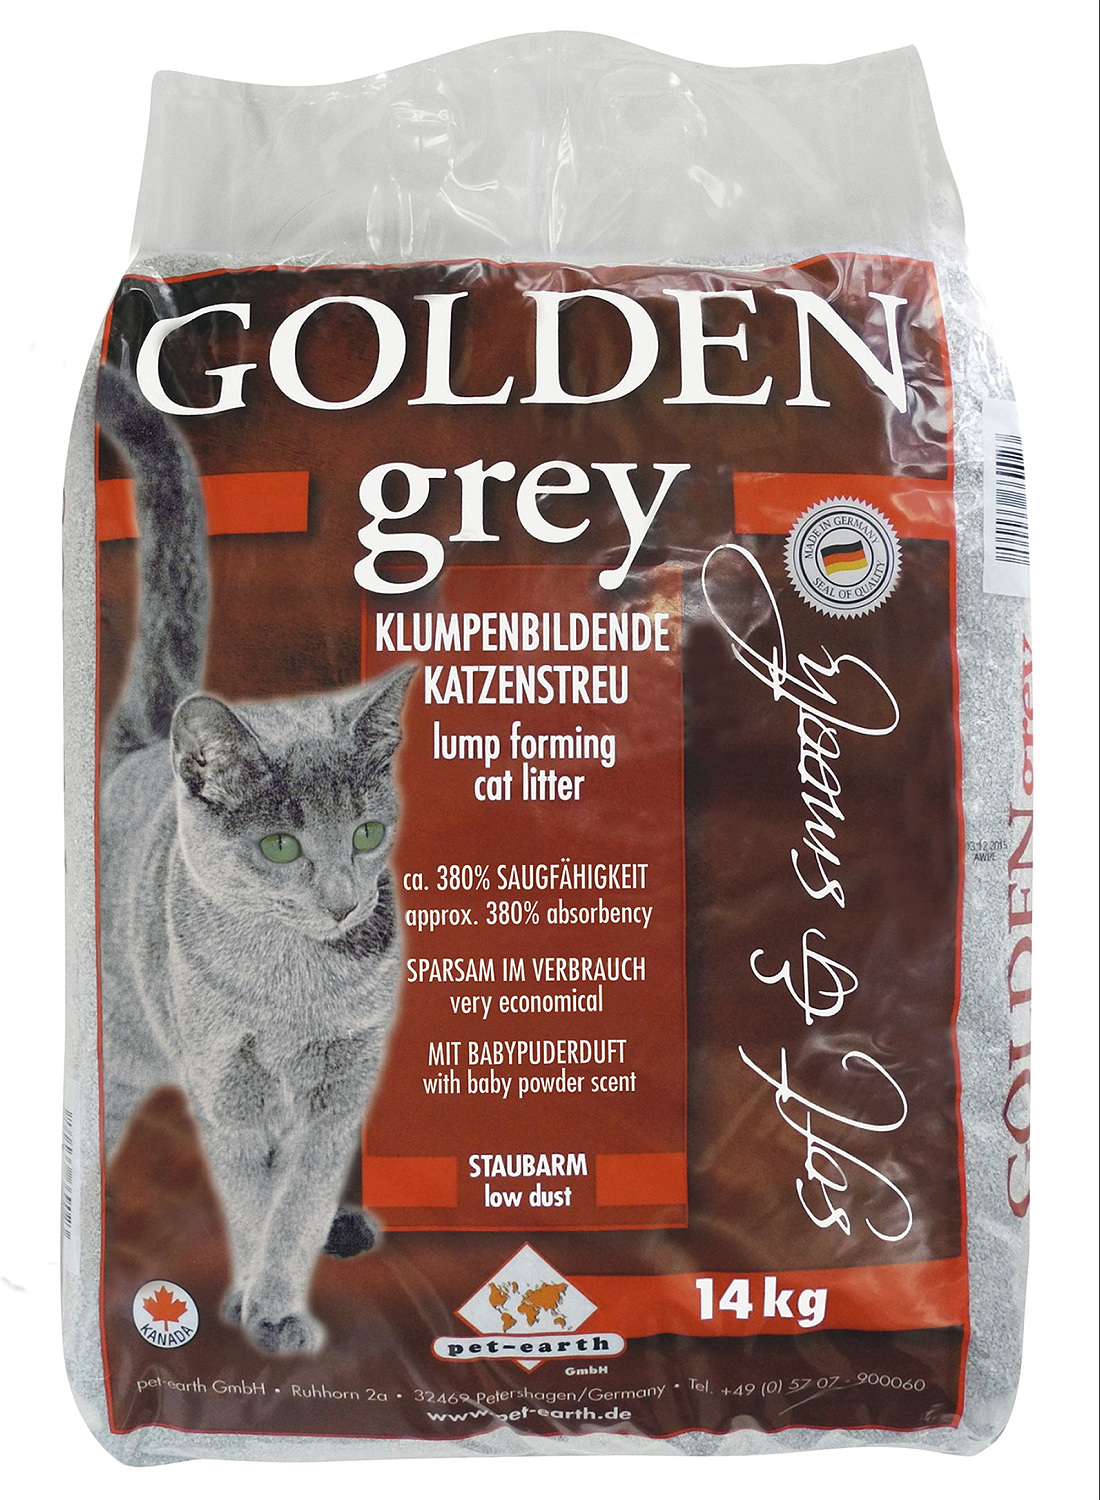 GOLDEN Grey klumpenbildende Katzenstreu 14 kg